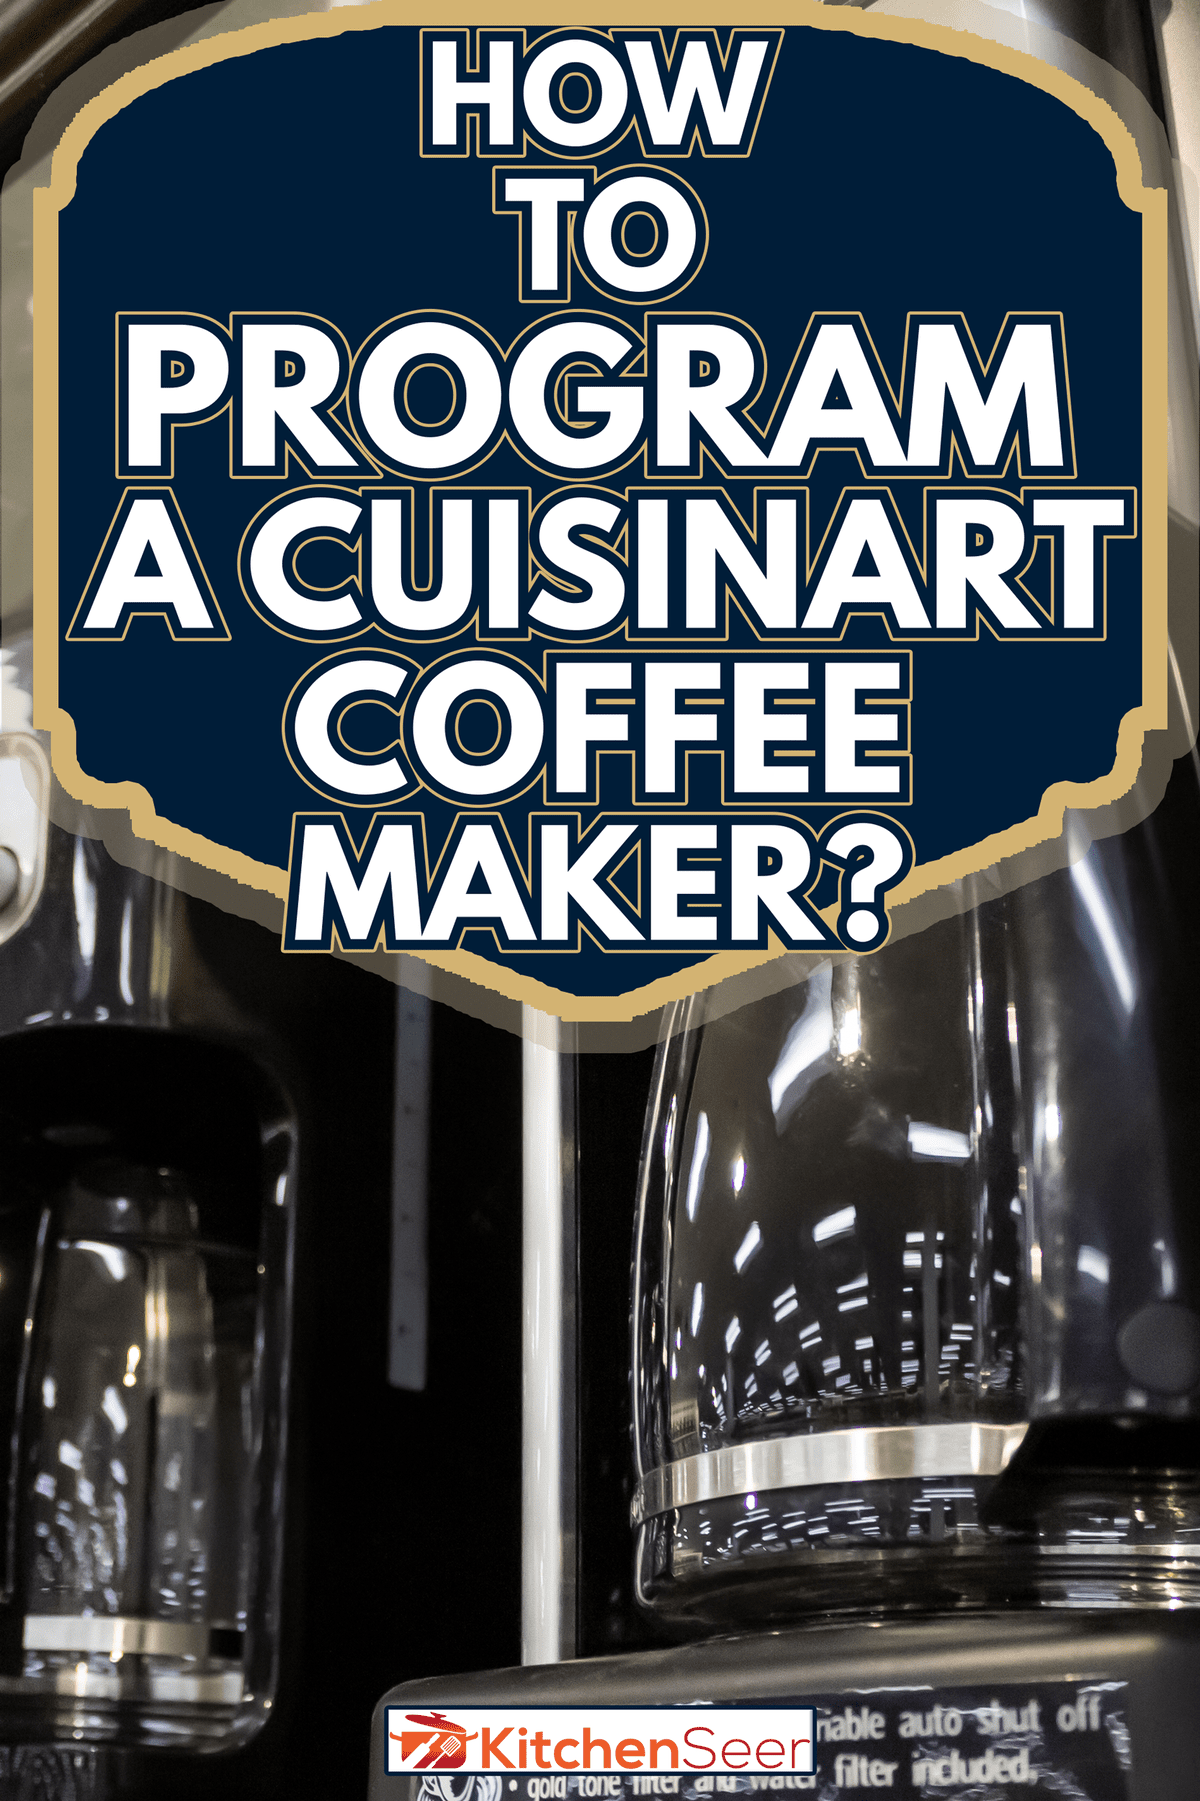 几台Cuisinart咖啡机在当地百货商店展示-如何编程一台Cuisinart咖啡机